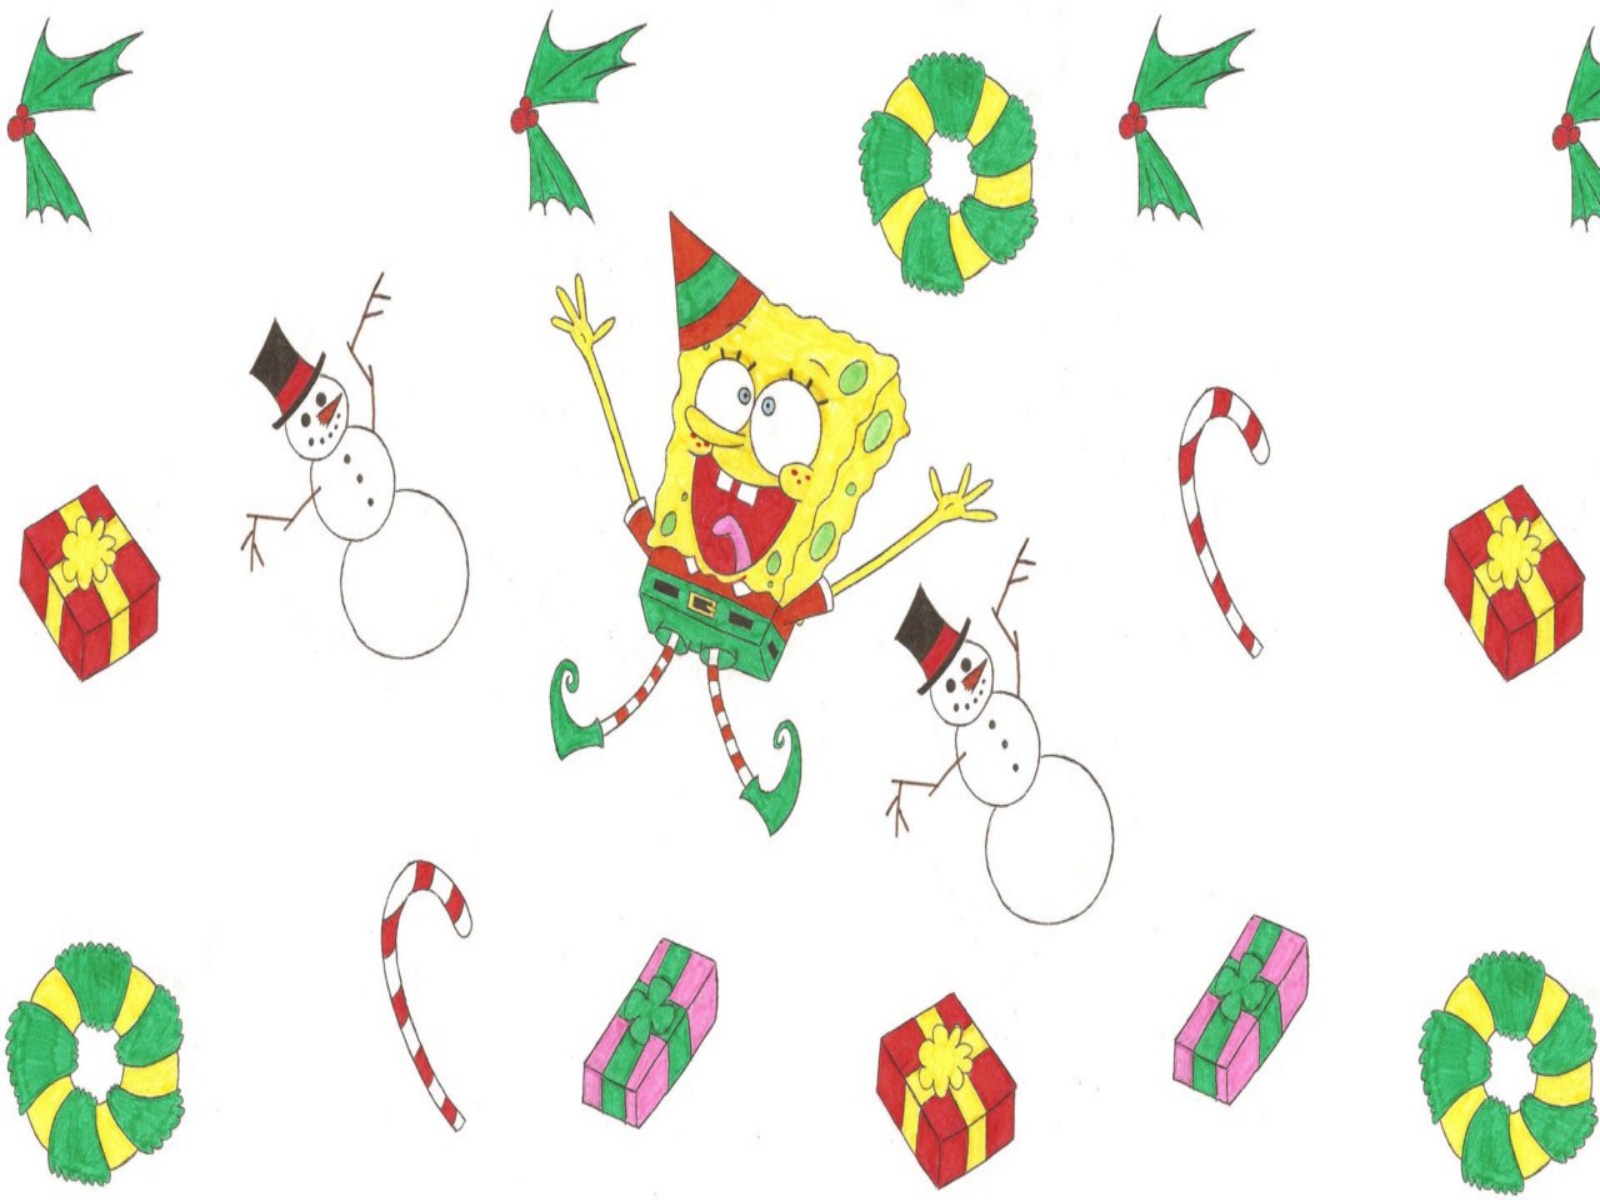 Spongebob Christmas Desktop Wallpaper - 1600x1200 - 182409